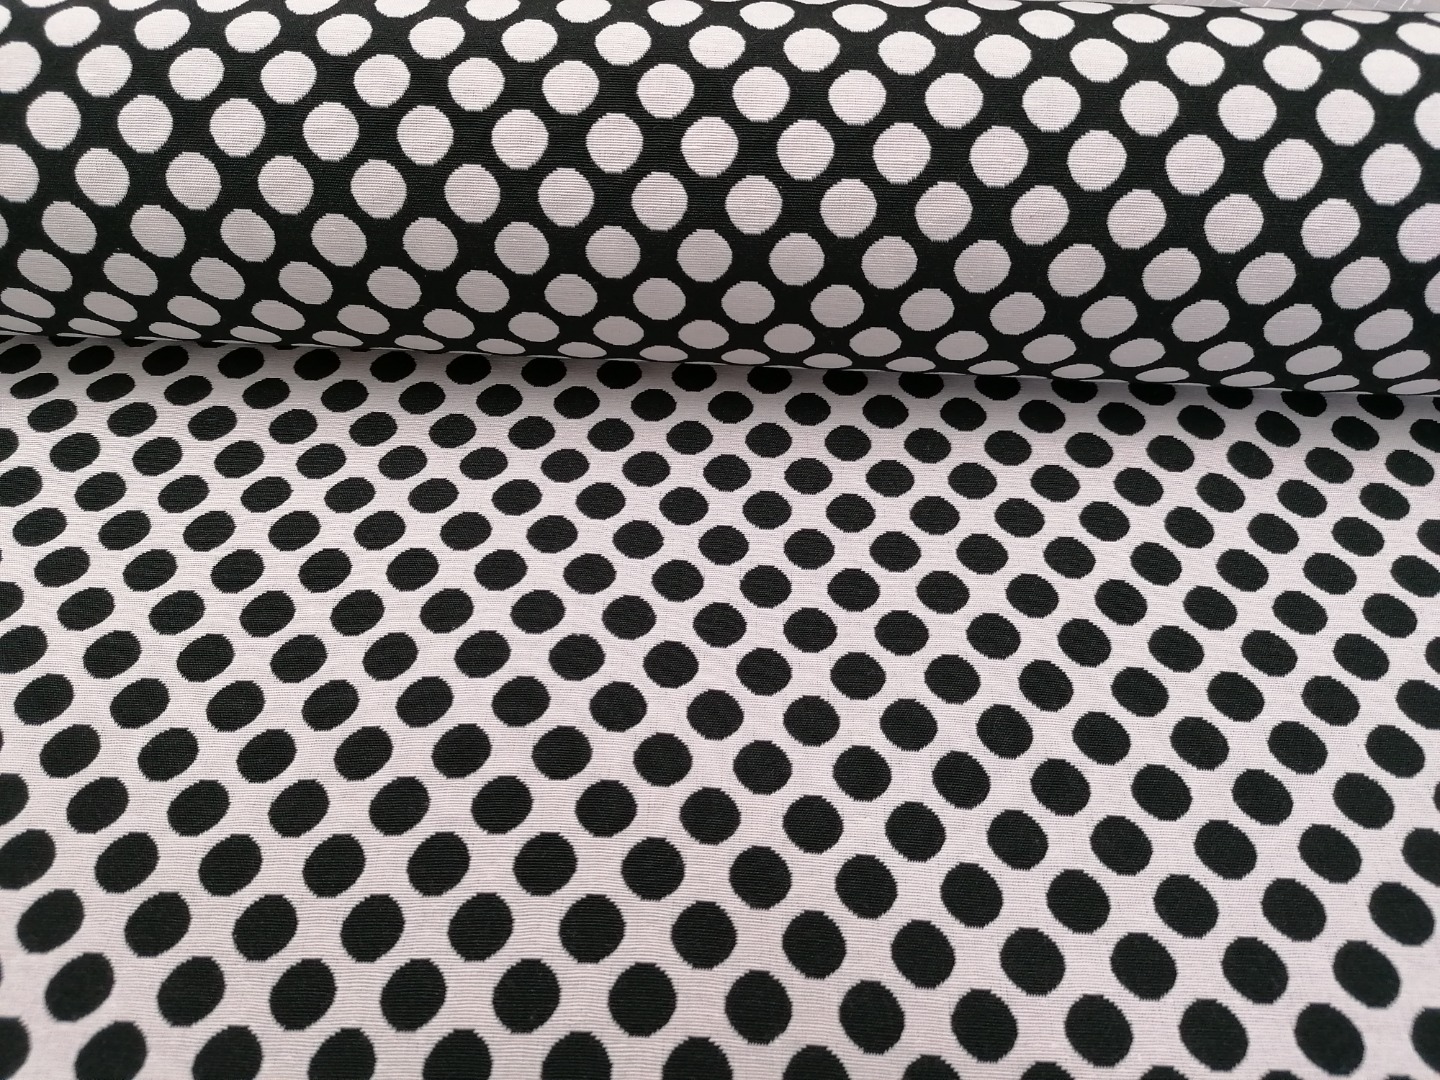 05m Dekostoff Jacquard Premium Doubleface Dots Punkte schwarz weiß 2